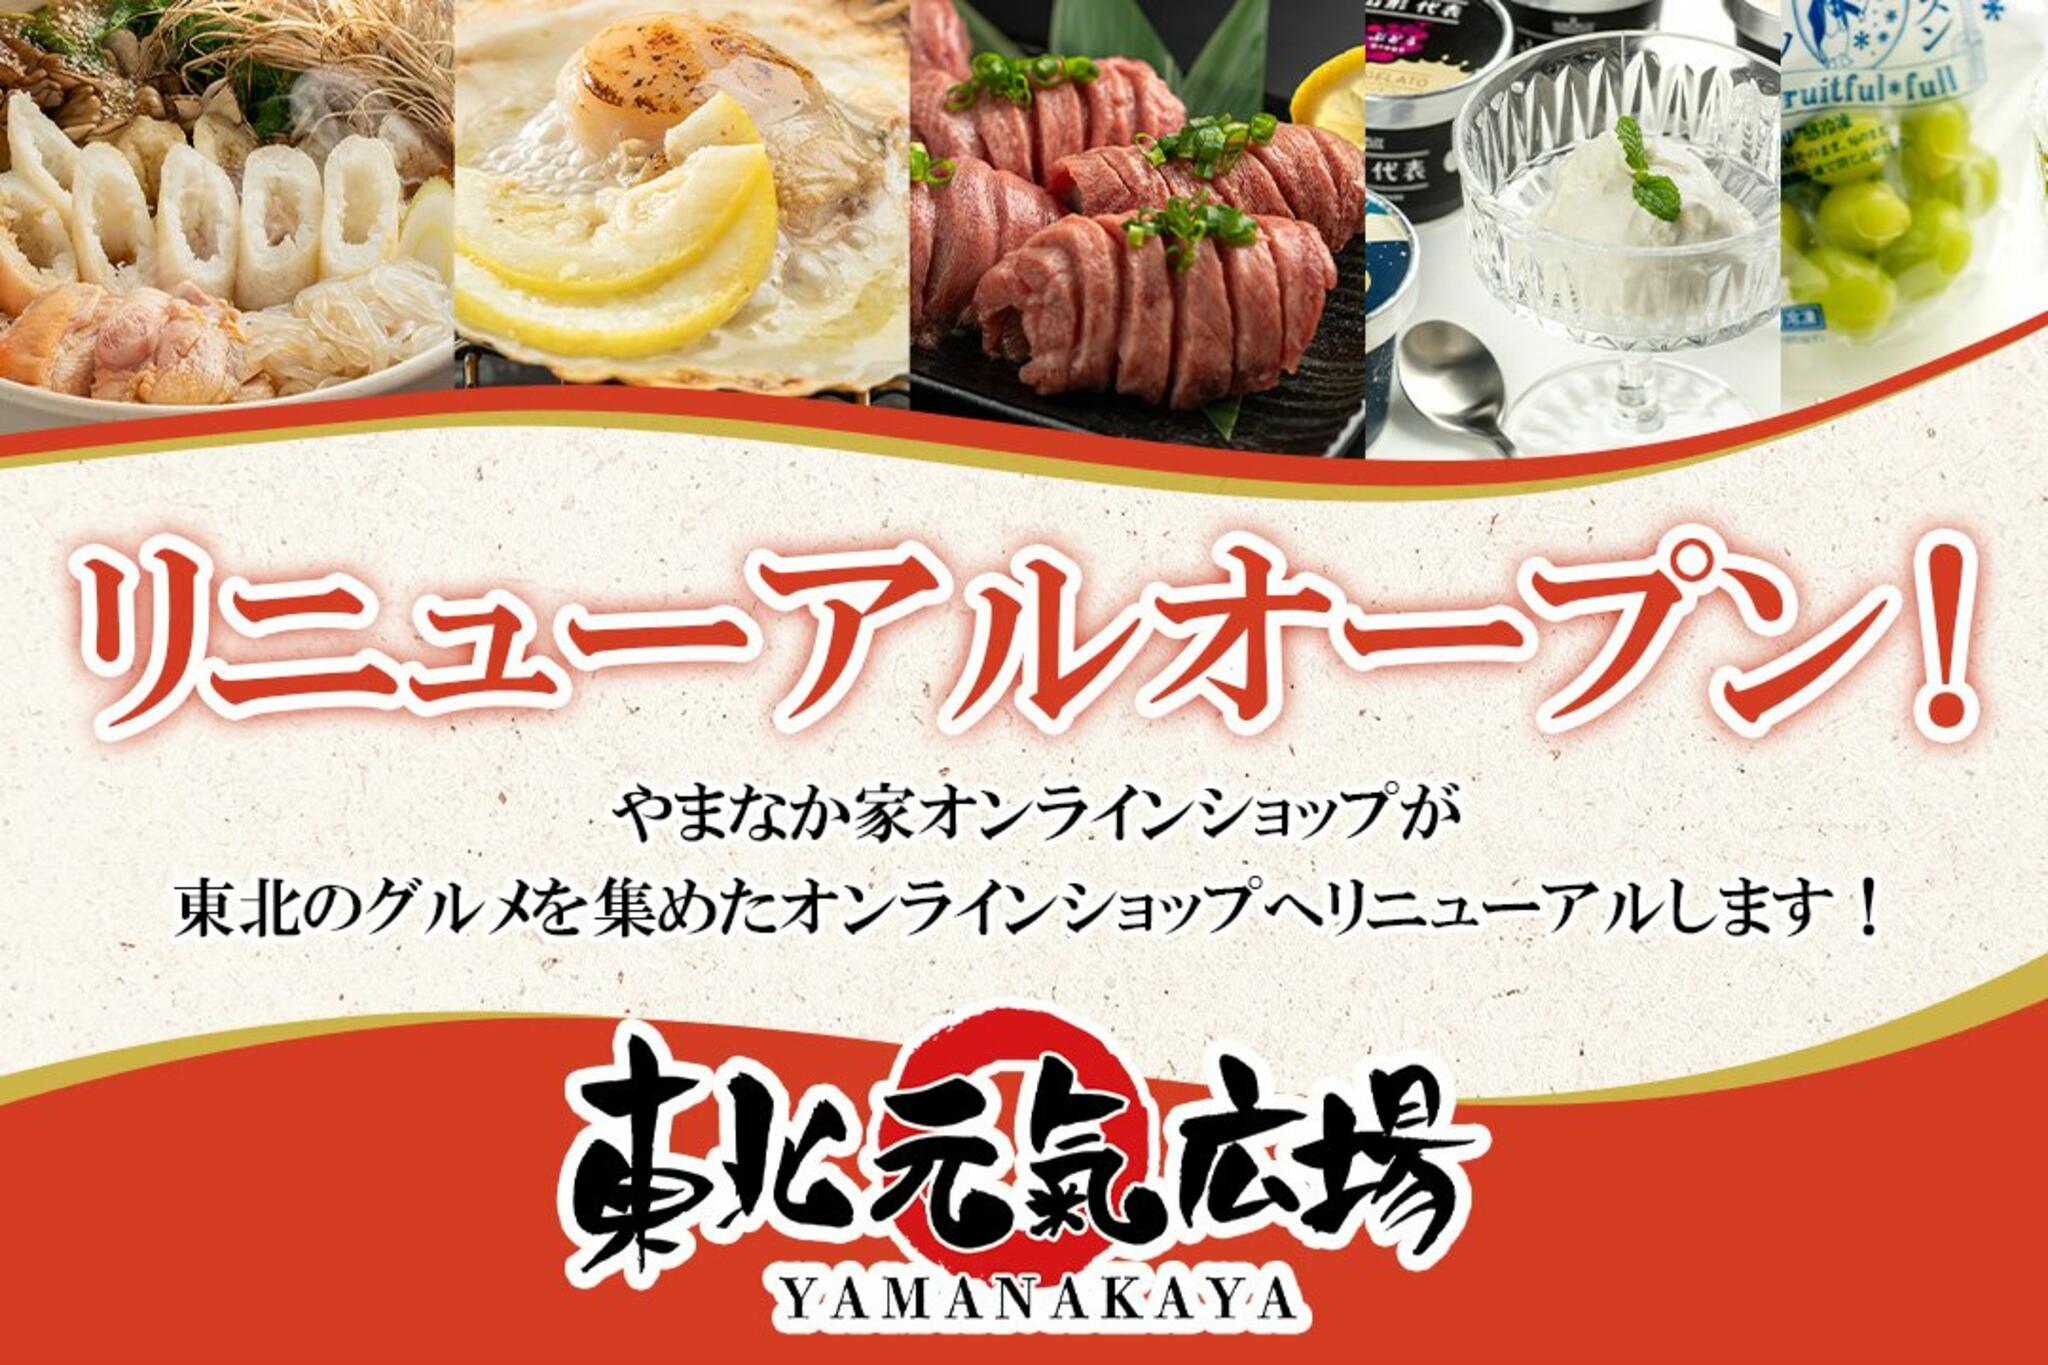 焼肉冷麺やまなか家 泉松森店からのお知らせ(オンラインショップリニューアルキャンペーンのお知らせ)に関する写真